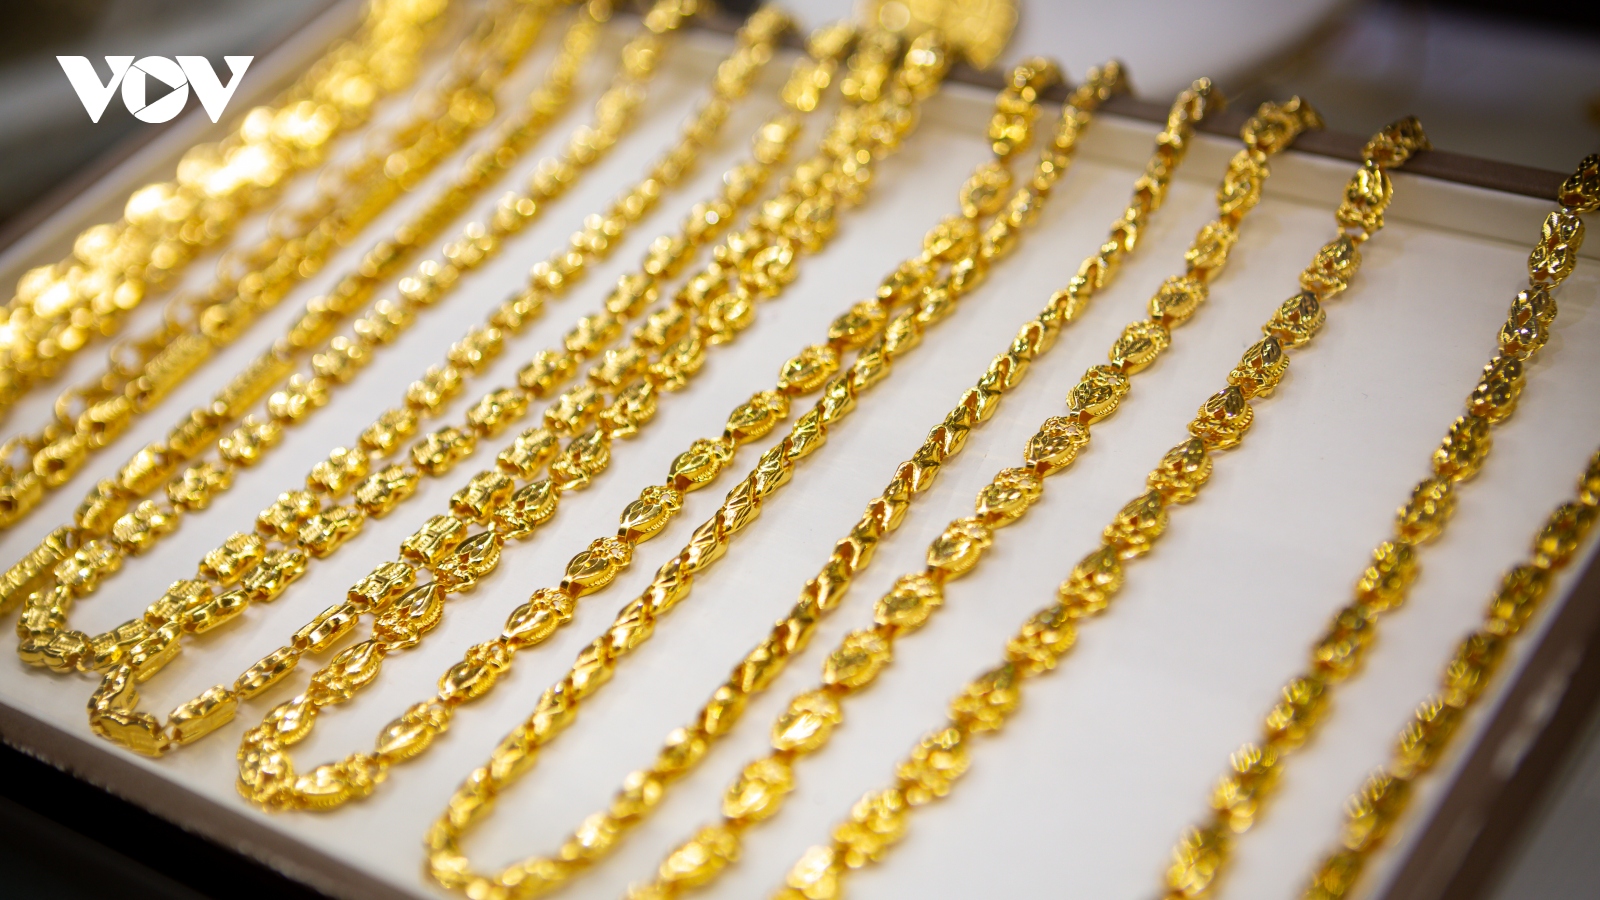 Giá vàng hôm nay 8/12: Vàng SJC giảm về mức 74 triệu đồng/lượng